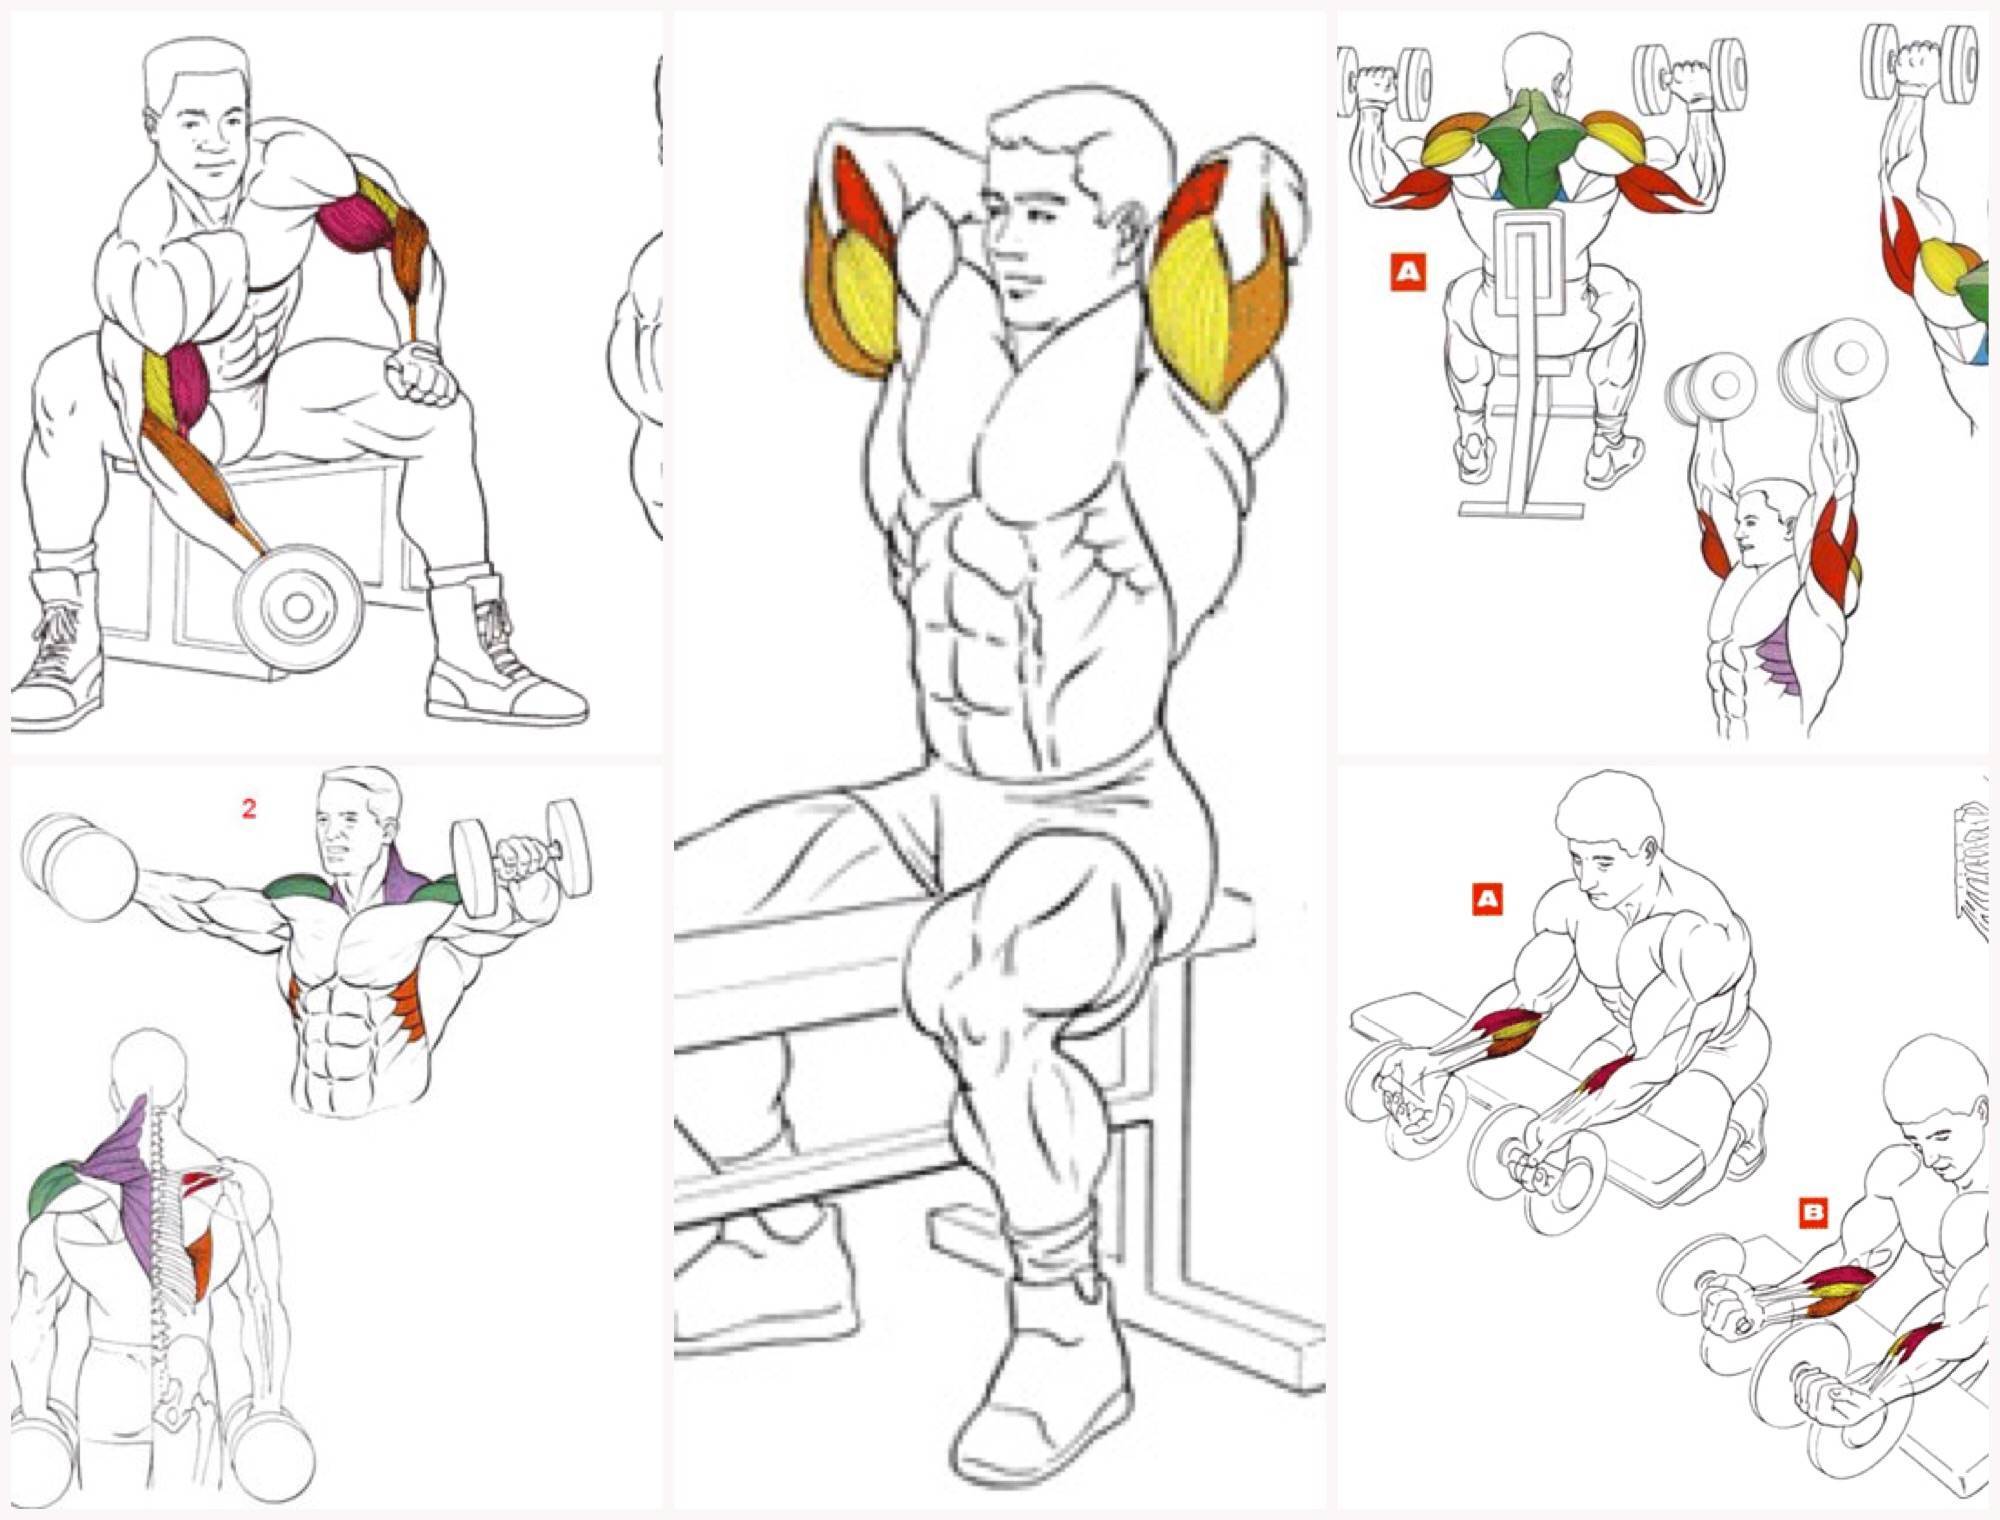 Как накачать мышцы